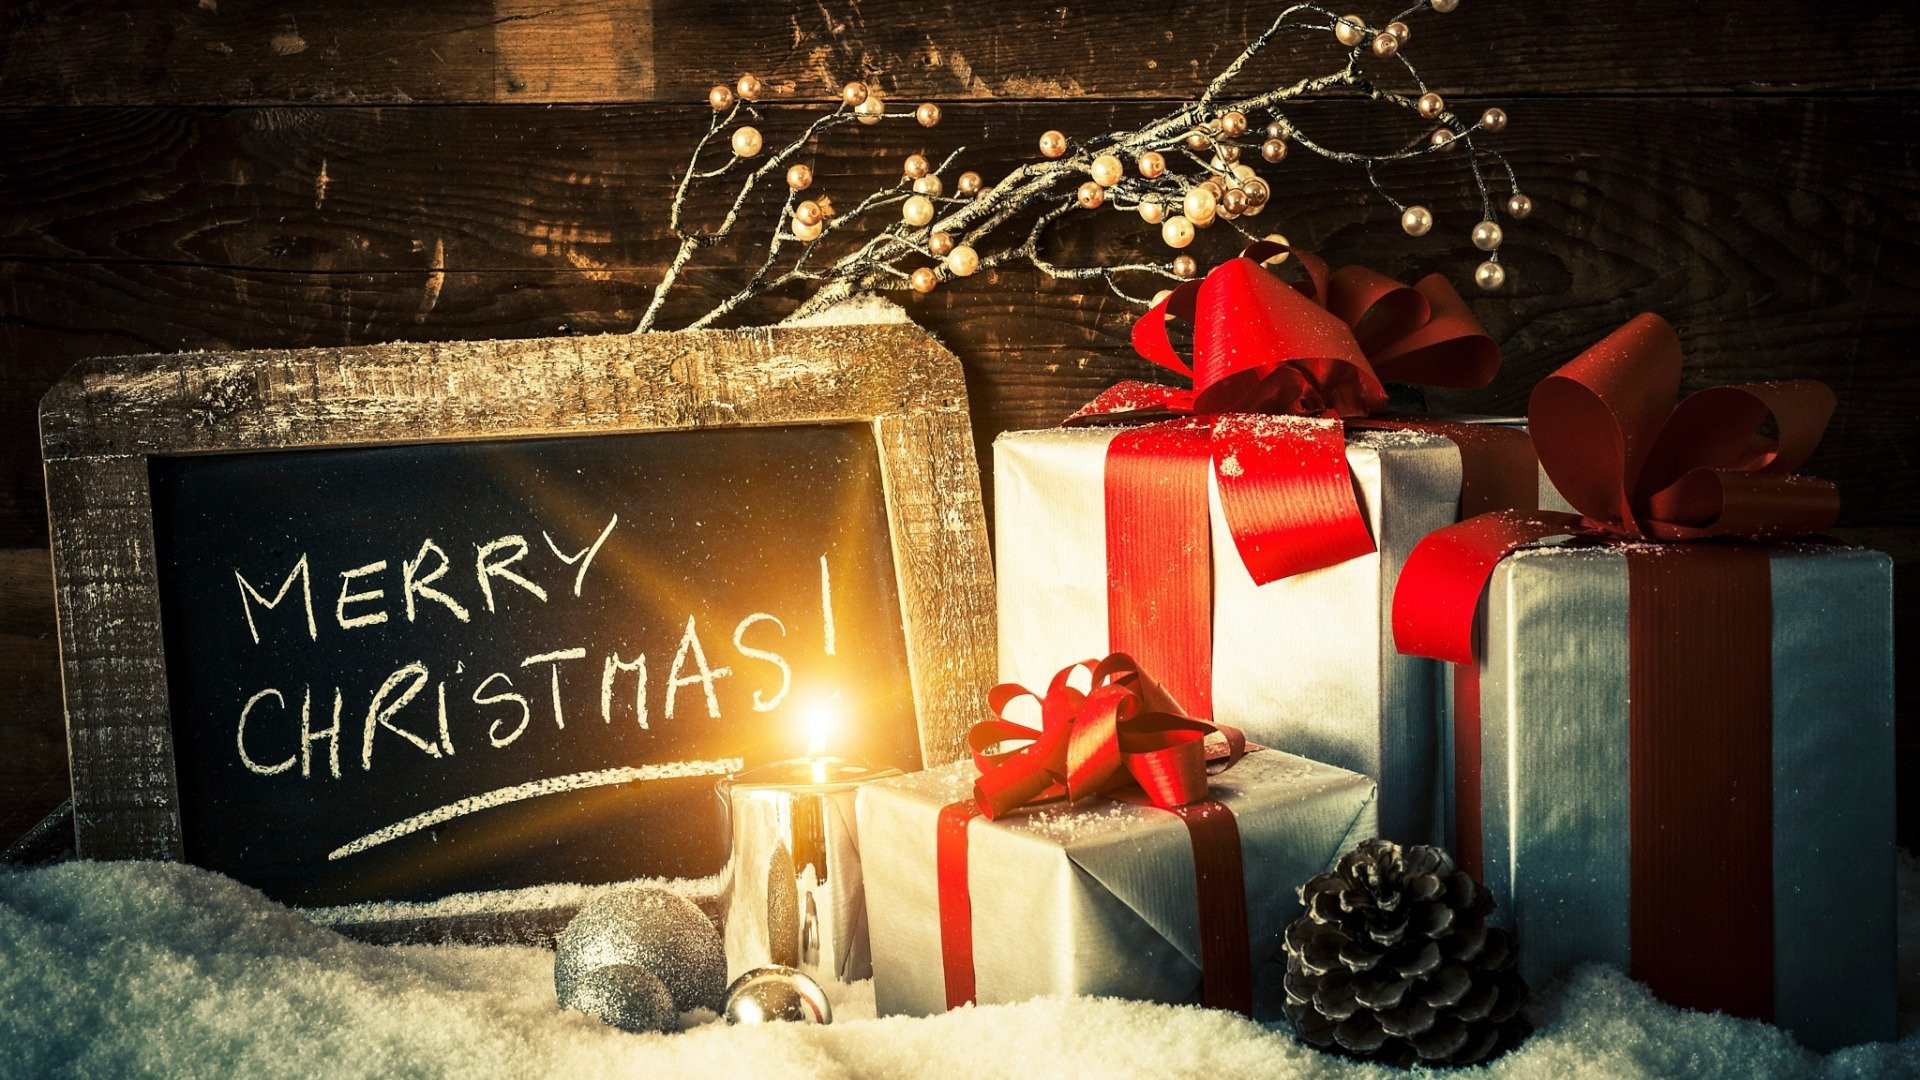 Hãy gửi đi thông điệp chúc mừng giáng sinh đến những người thân yêu của mình với những bức ảnh đậm chất lễ hội, tạo nên không khí ấm áp và đầy ý nghĩa cho mùa giáng sinh năm nay!